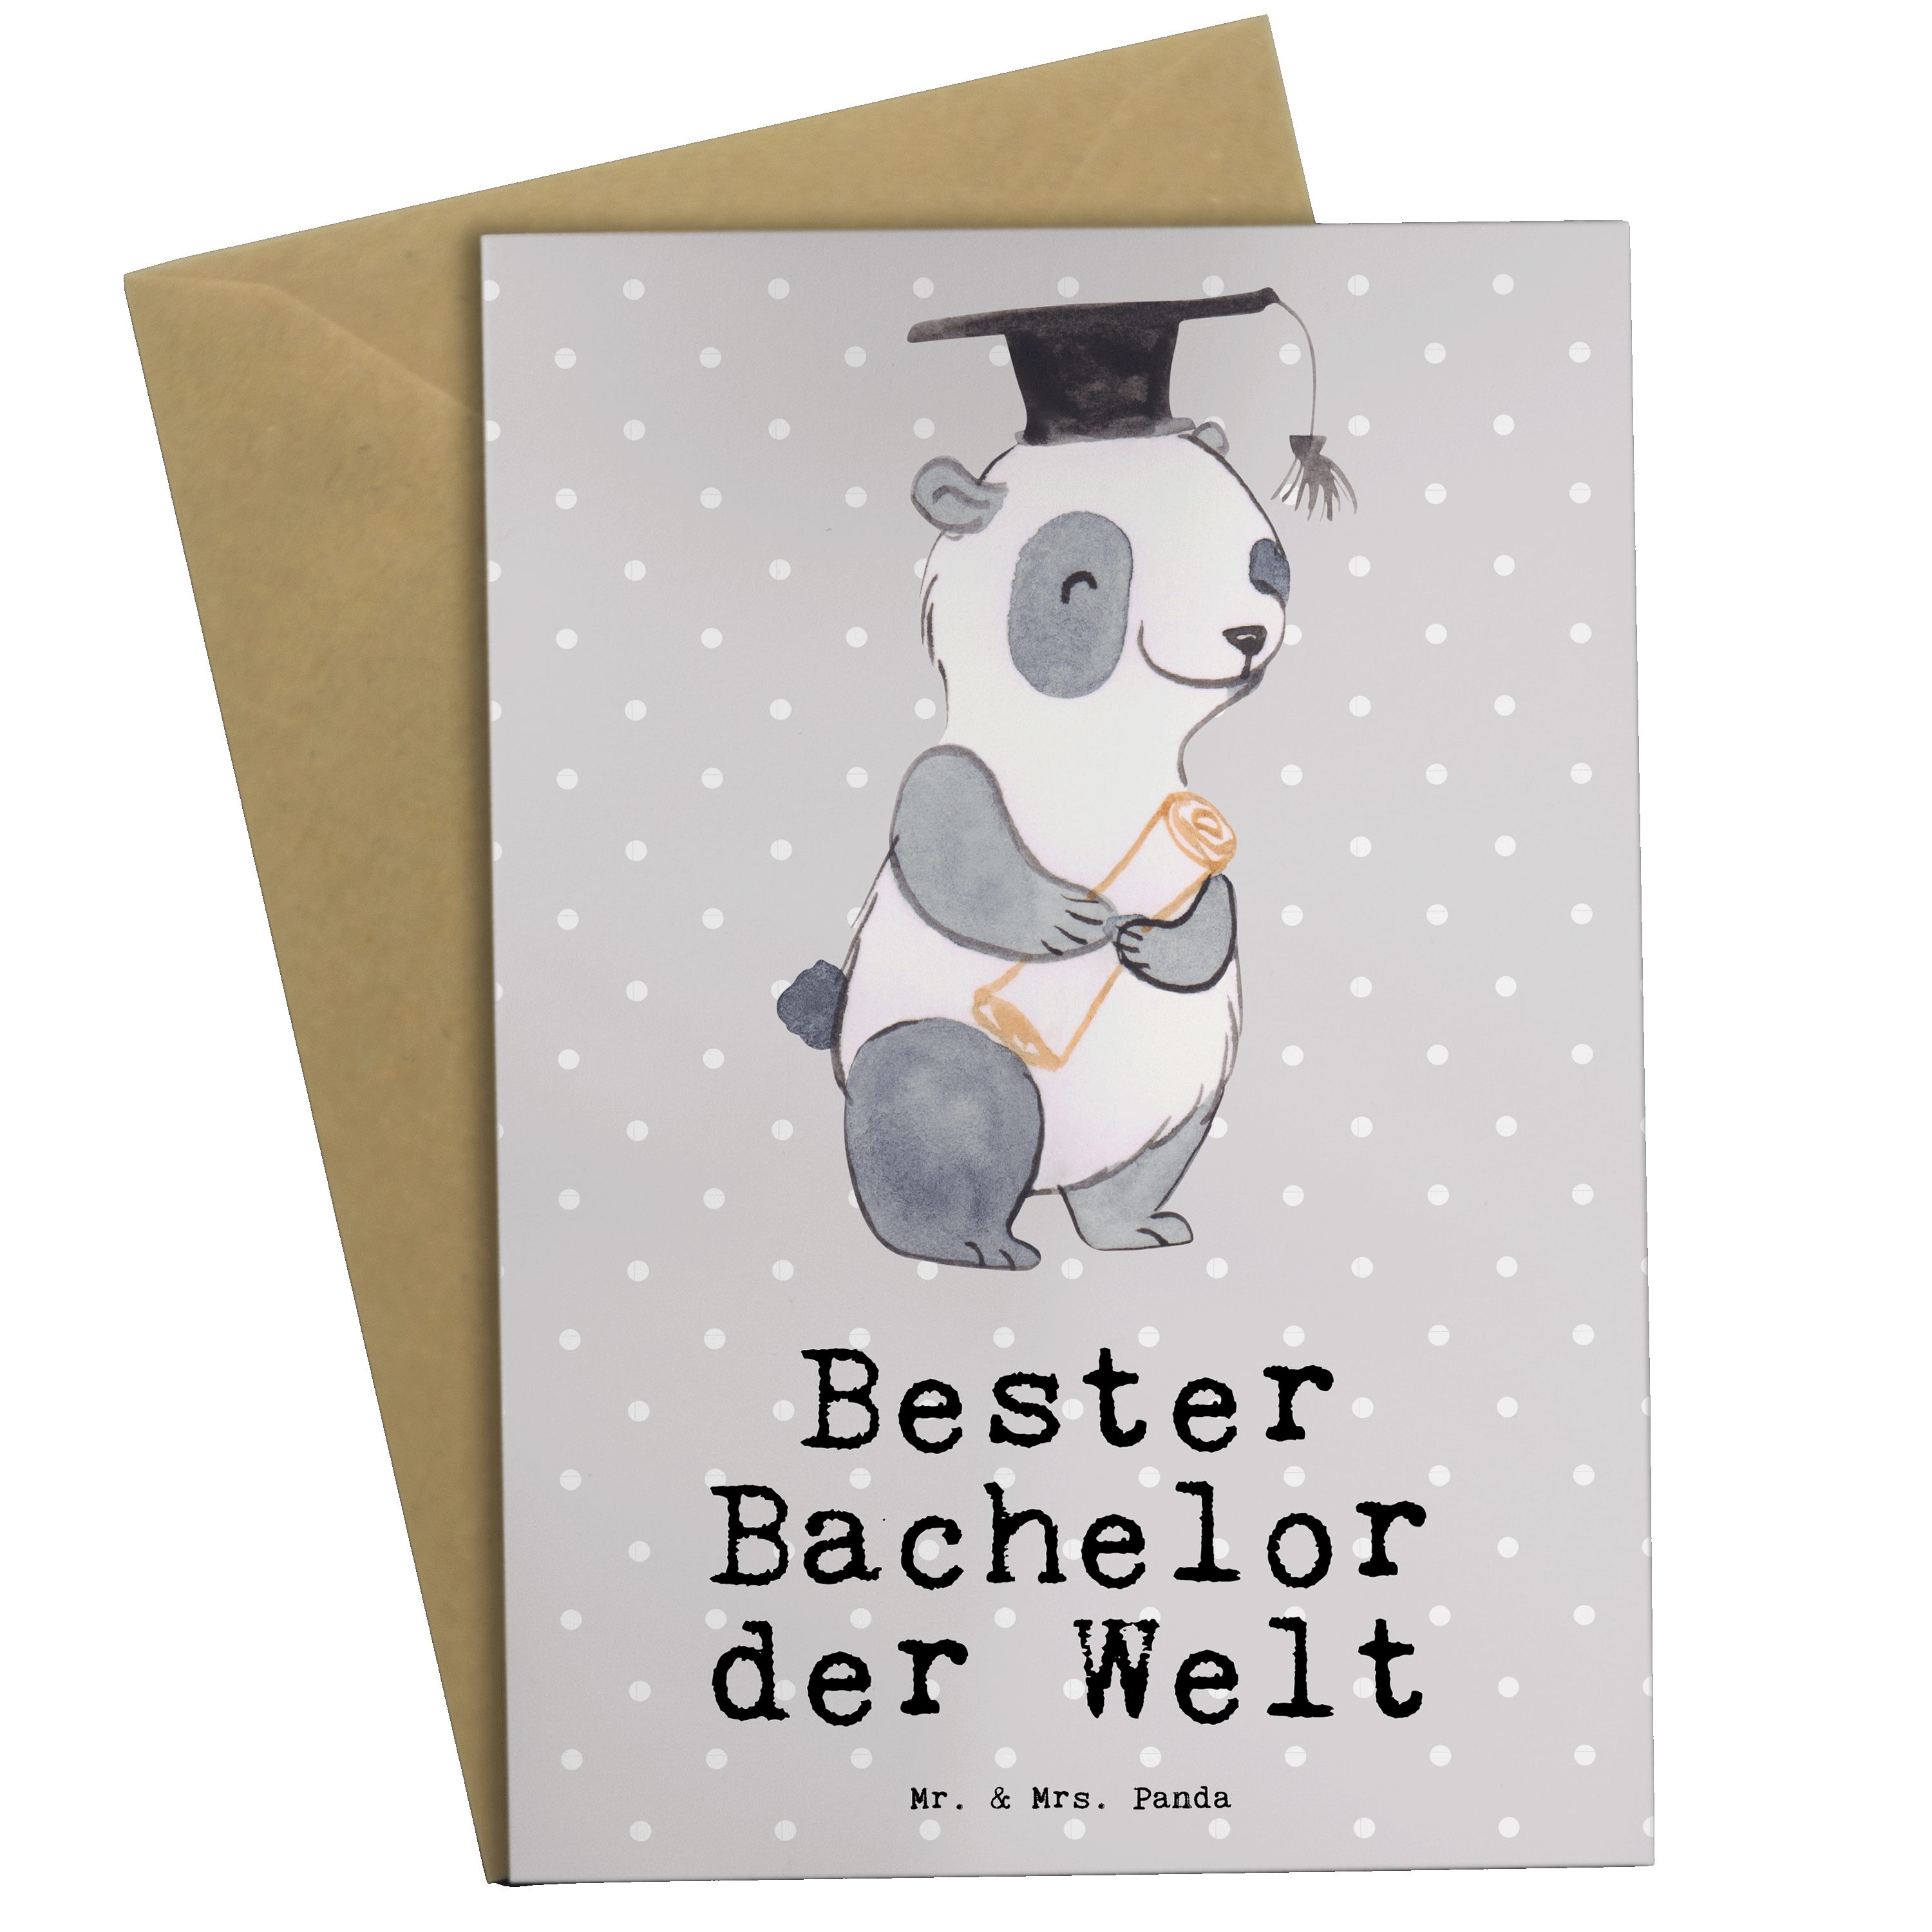 Mr. & Mrs. Panda Grußkarte Panda Bester Bachelor der Welt - Grau Pastell - Geschenk, Geburtstags